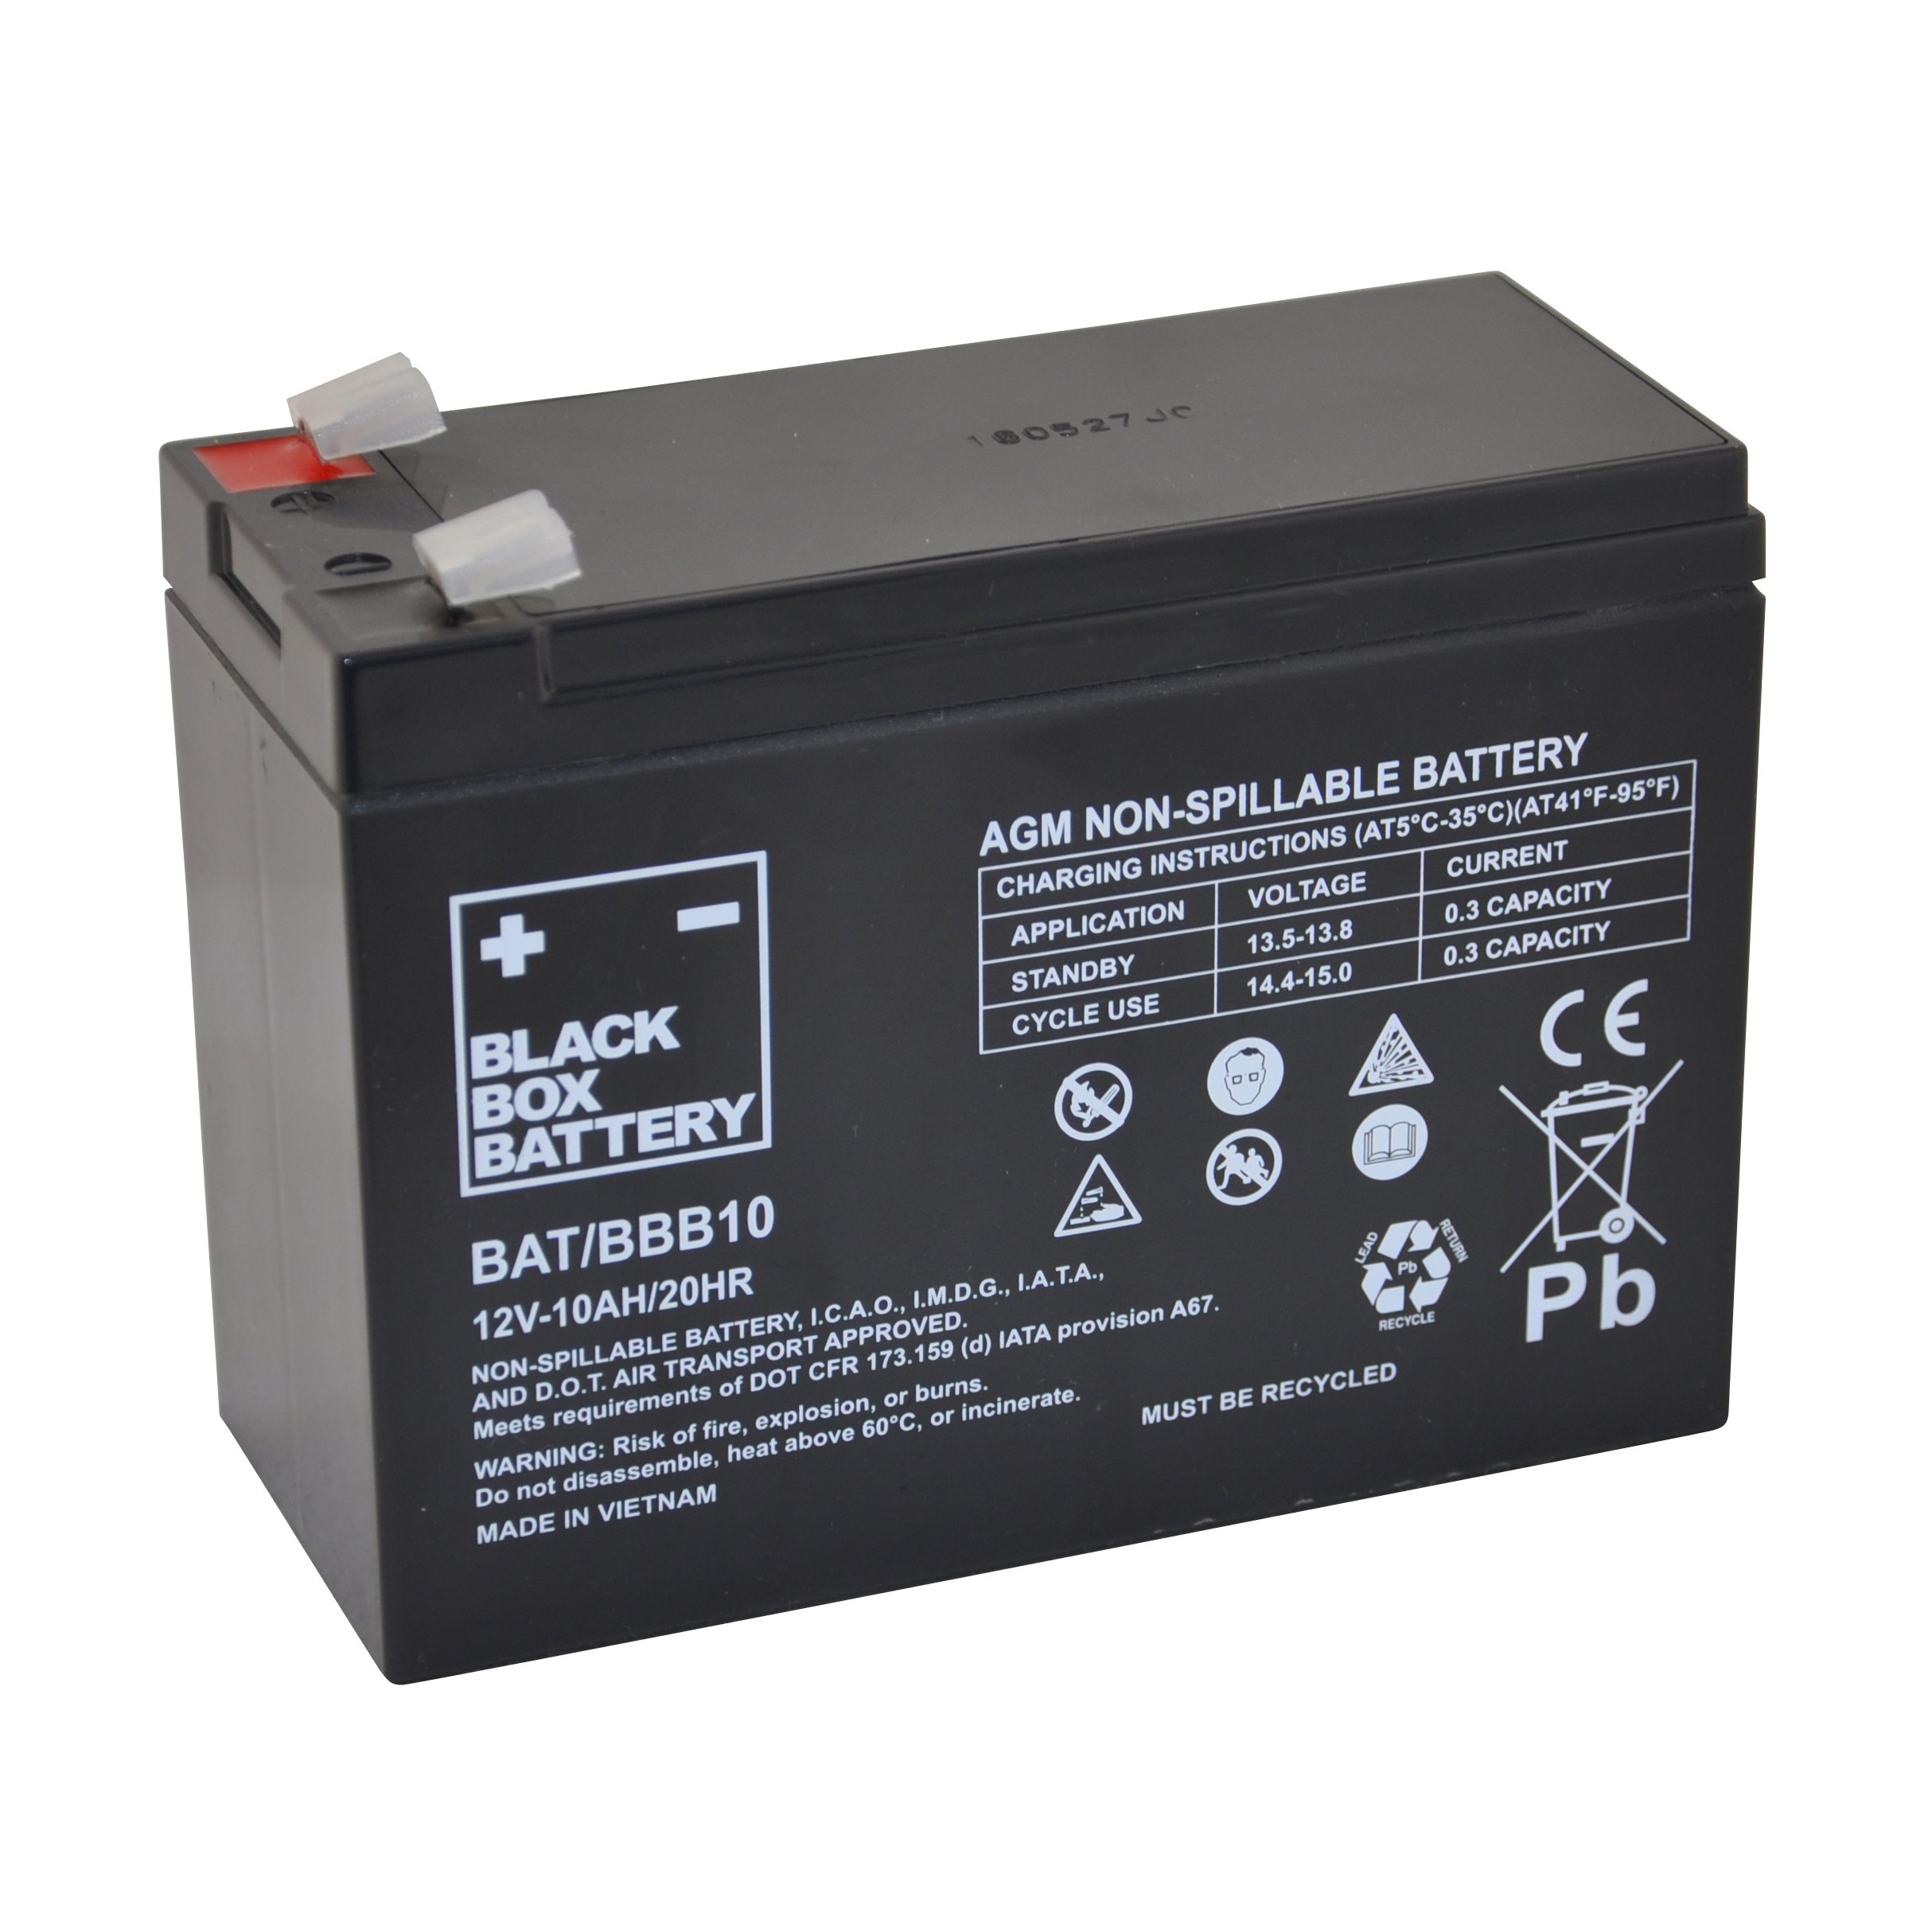 12v 10ah BBB Sealed lead acid (AGM) Mobility Scooter Battery. 12v10ah/10hr. GFM 10(12v10ah/20hr) non-Spillable. Non-Spillable аккумулятор. 12v 10ah